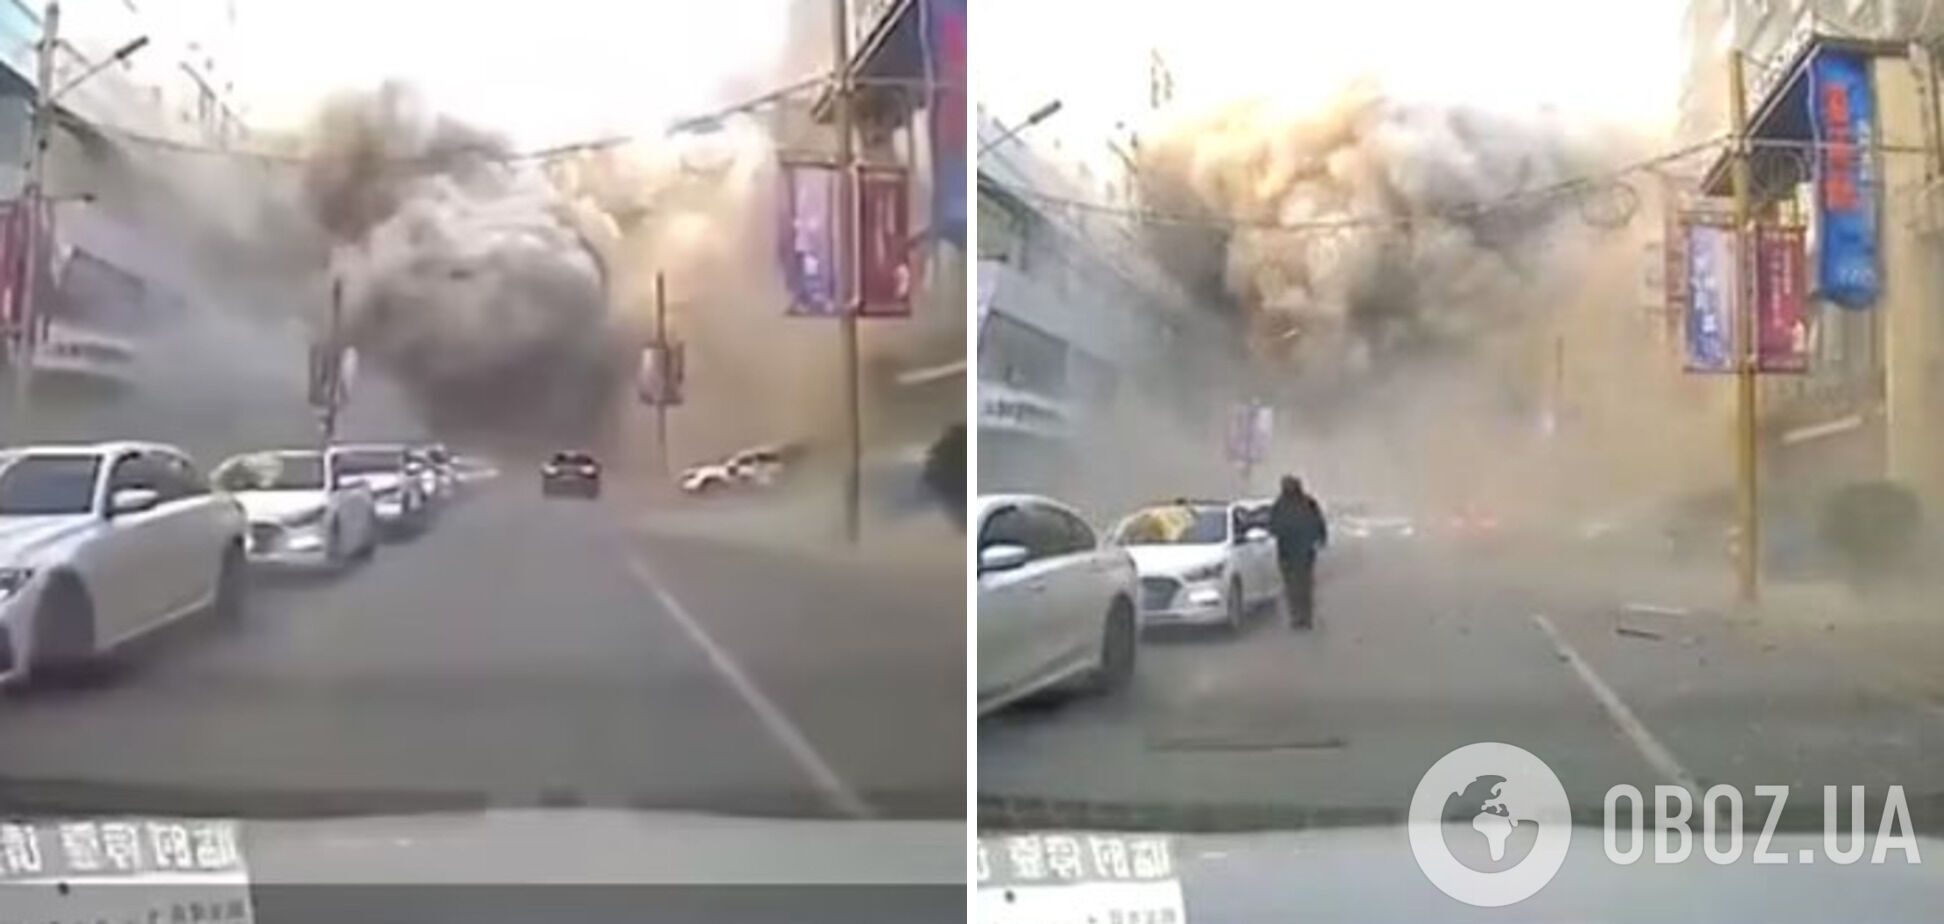 Момент взрыва попал на видеорегистраторы